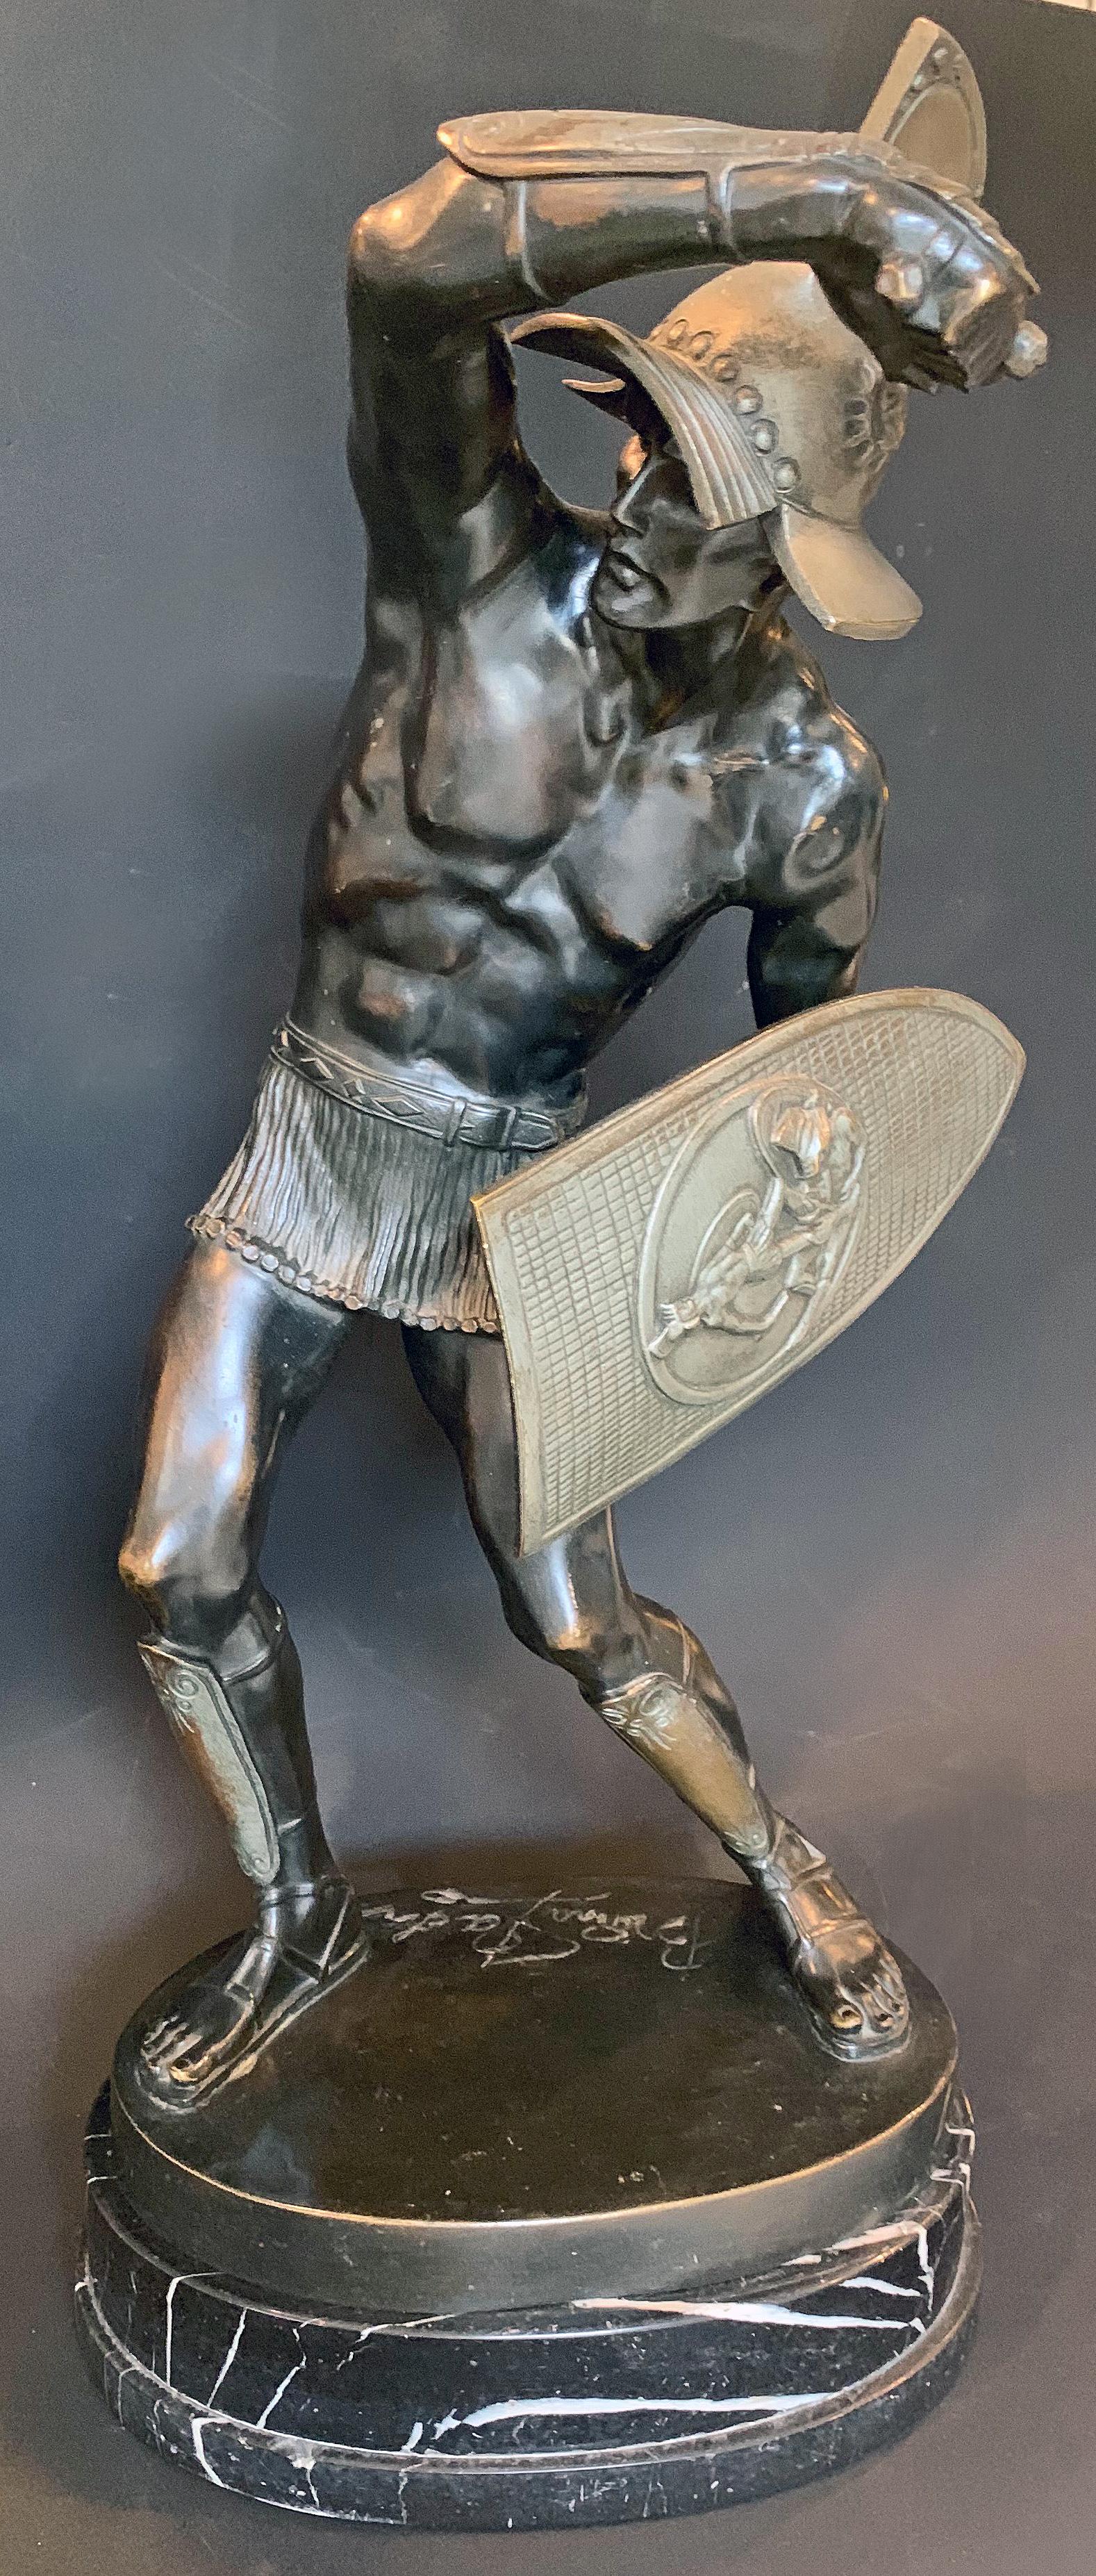 Das erste Beispiel dieser Skulptur, das wir gesehen haben, ist diese eindrucksvolle Darstellung eines männlichen Gladiators - nur mit einem kurzen Kettenhemd bekleidet - inmitten eines Kampfes, einen Arm mit einem Dolch in der Hand erhoben, der